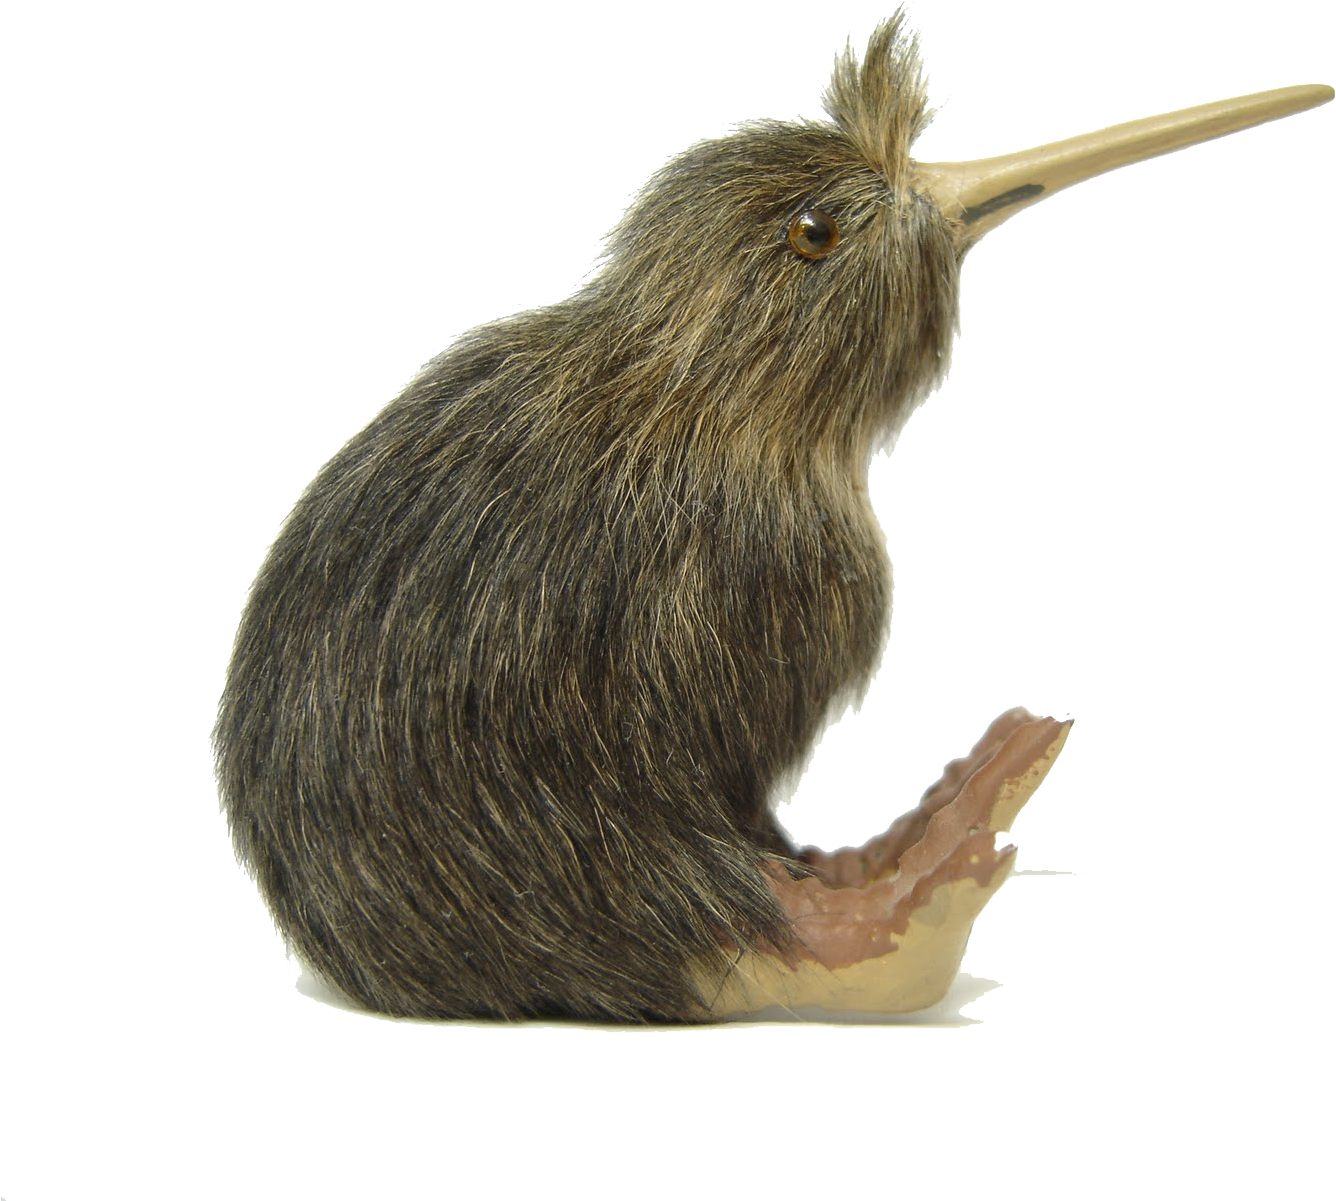 Kiwi Bird Png File - Kiwi Bird White Background (1600x1200), Png Download